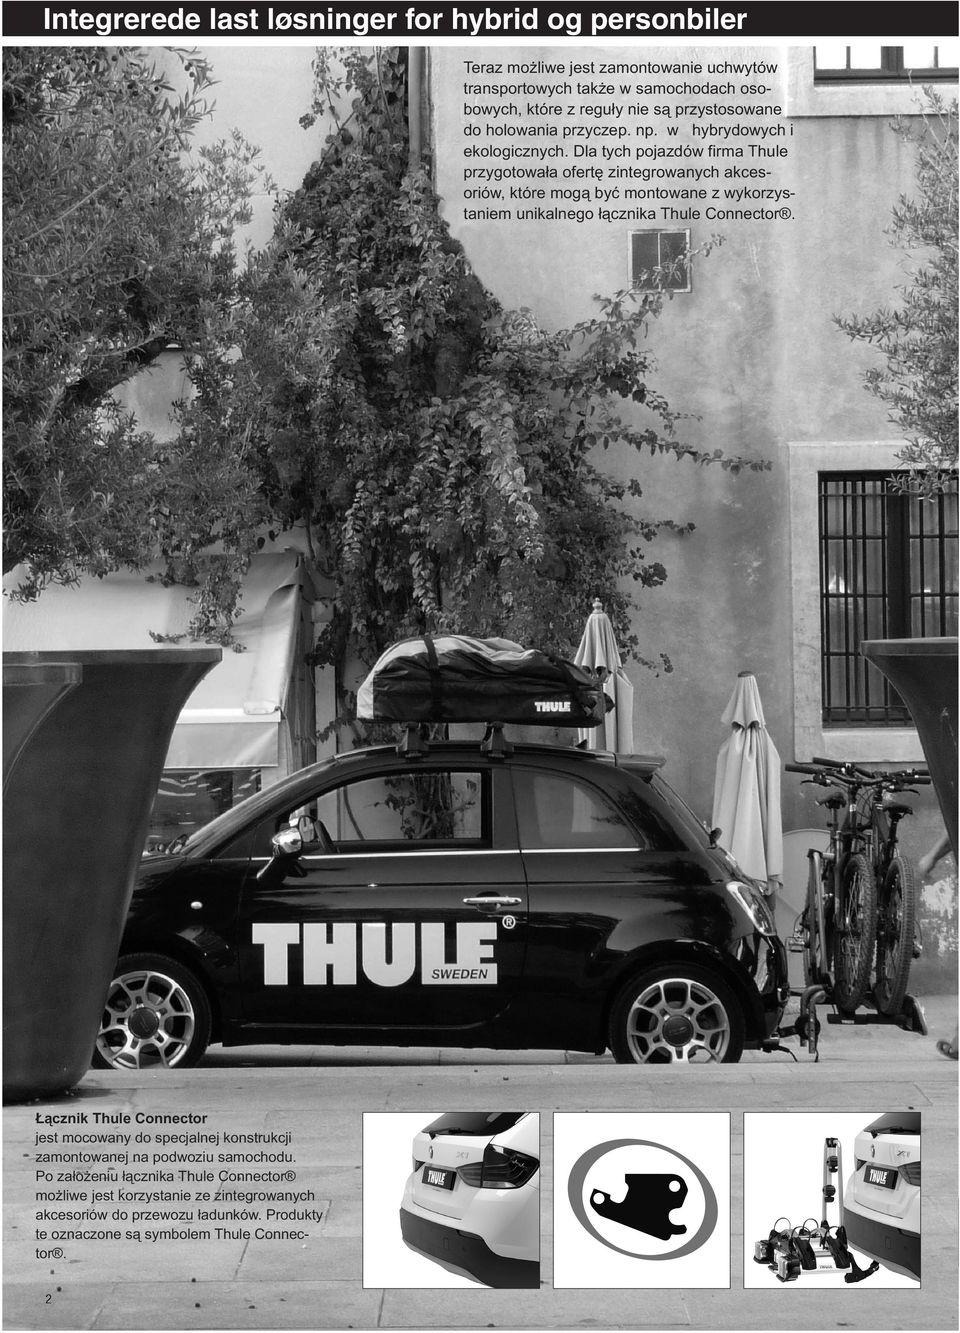 Dla tych pojazdów firma Thule przygotowała ofertę zintegrowanych akcesoriów, które mogą być montowane z wykorzystaniem unikalnego łącznika Thule Connector.